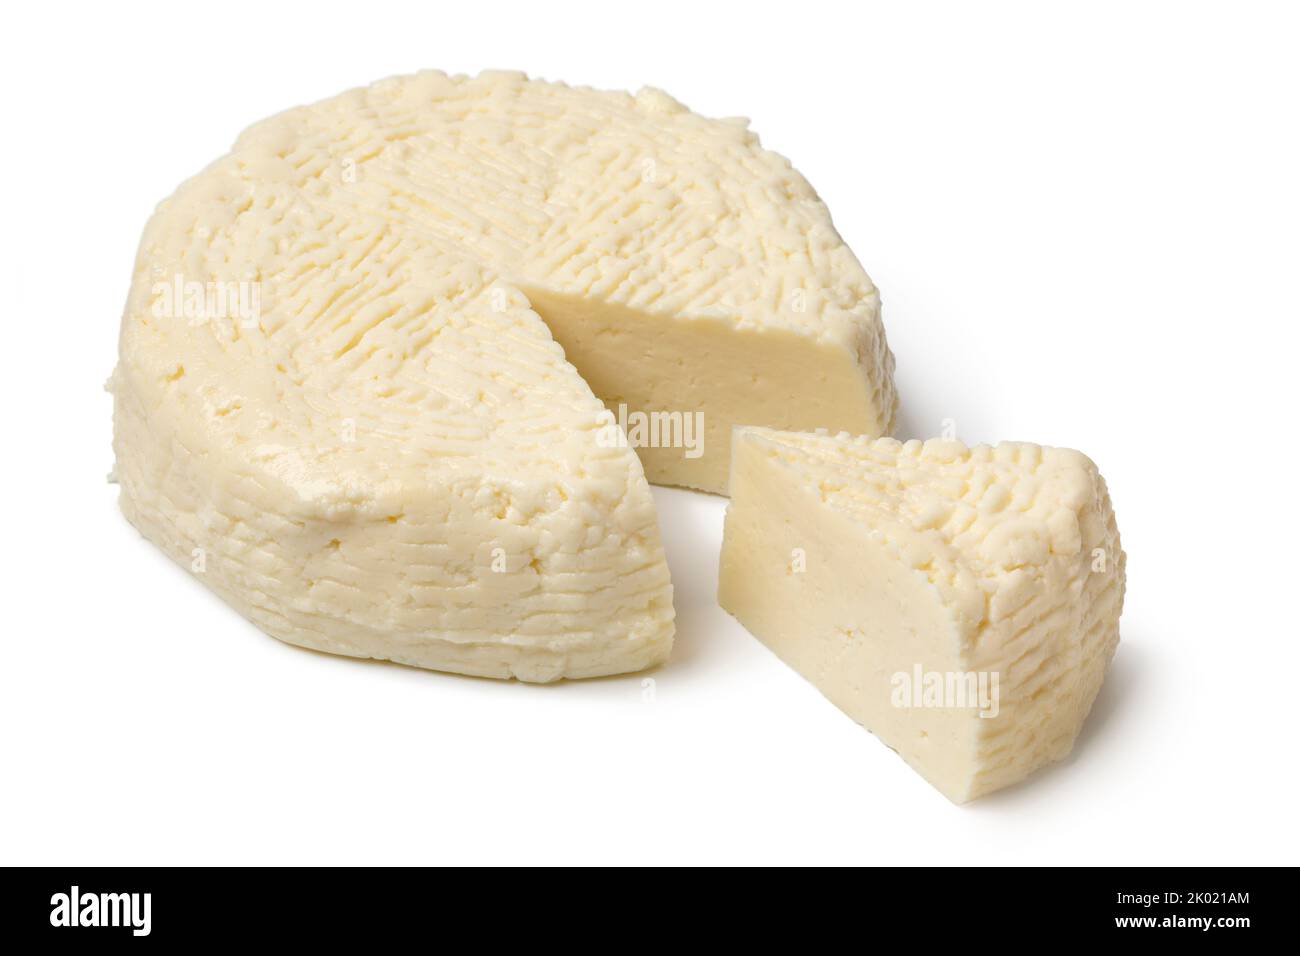 Pezzo di tradizionale formaggio bianco croato fatto in casa di latte cotto, Kuhani sirevi, isolato su sfondo bianco Foto Stock